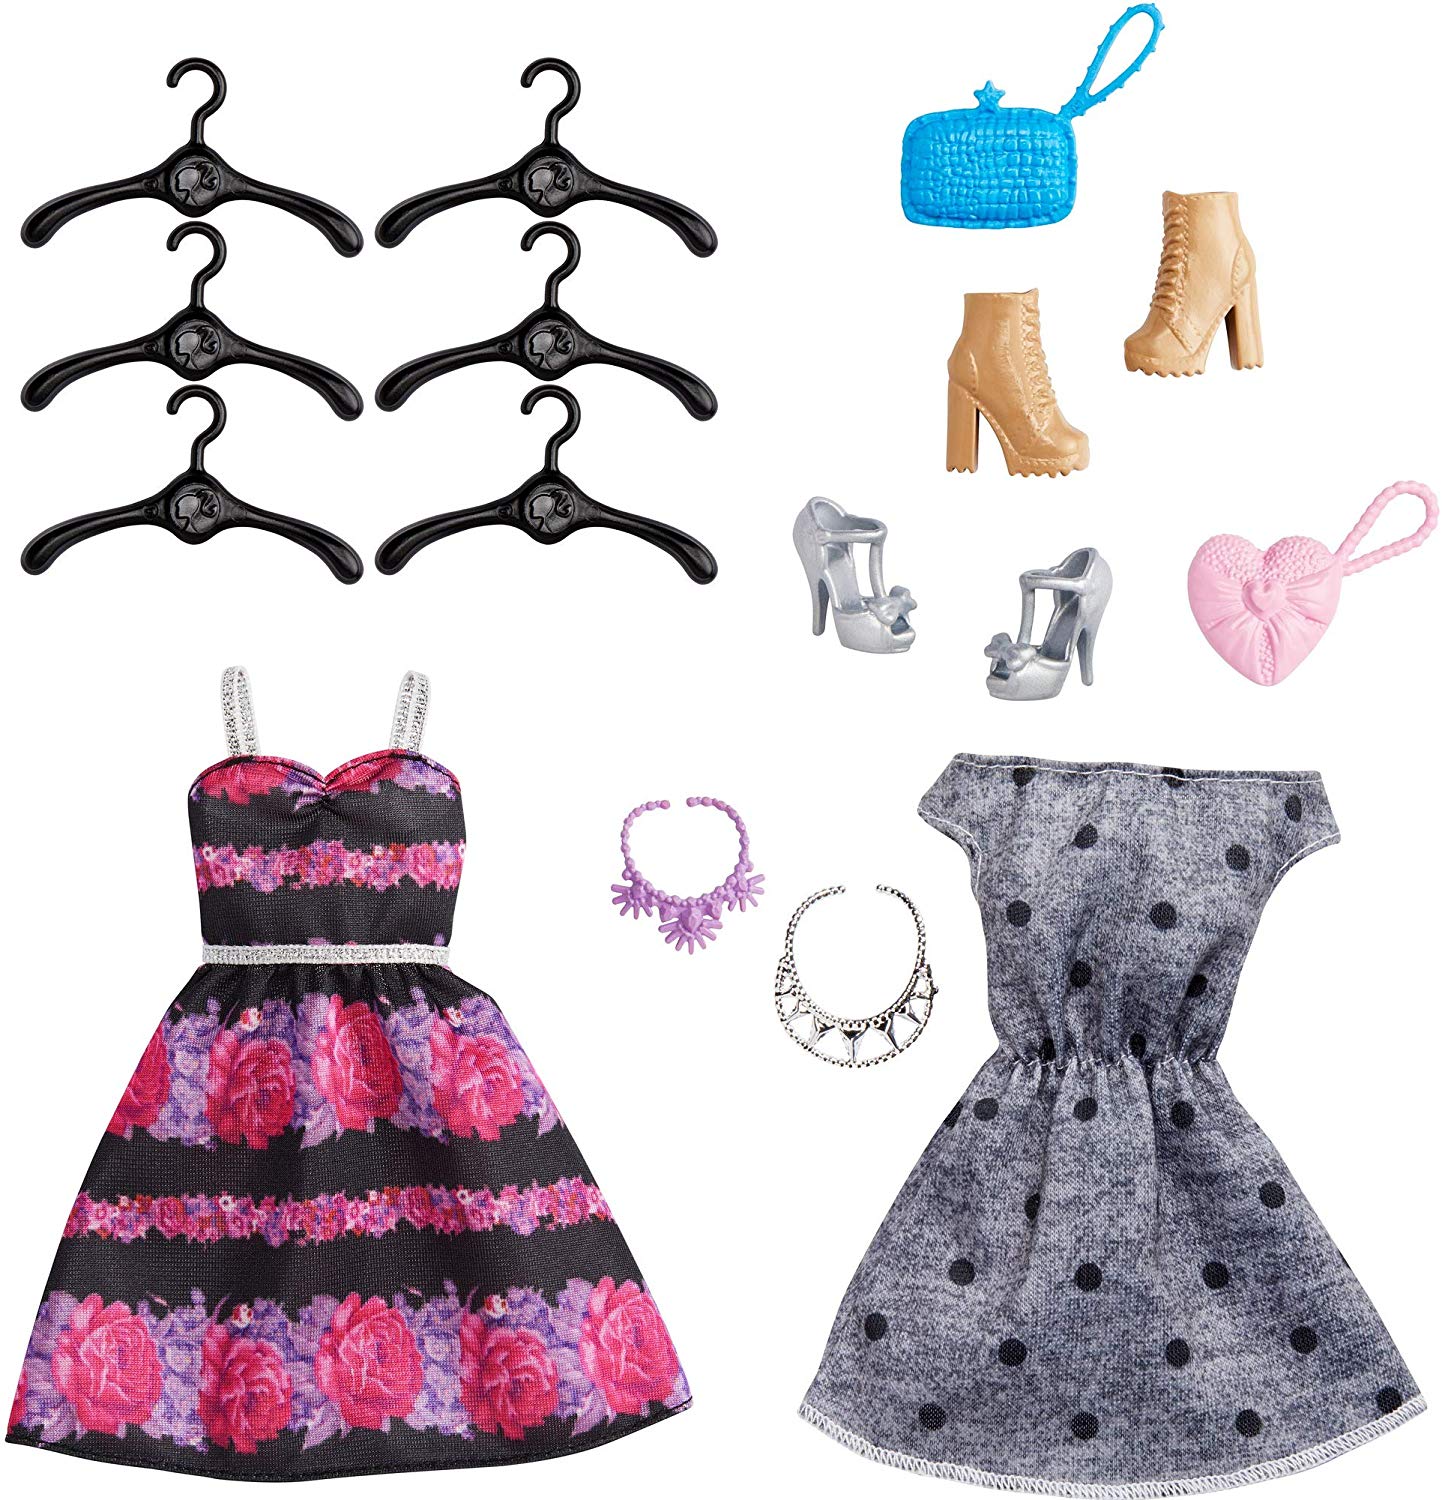  Jouet - Le dressing de Barbie - Poupée + Armoire + Cintres + 15 Accessoires